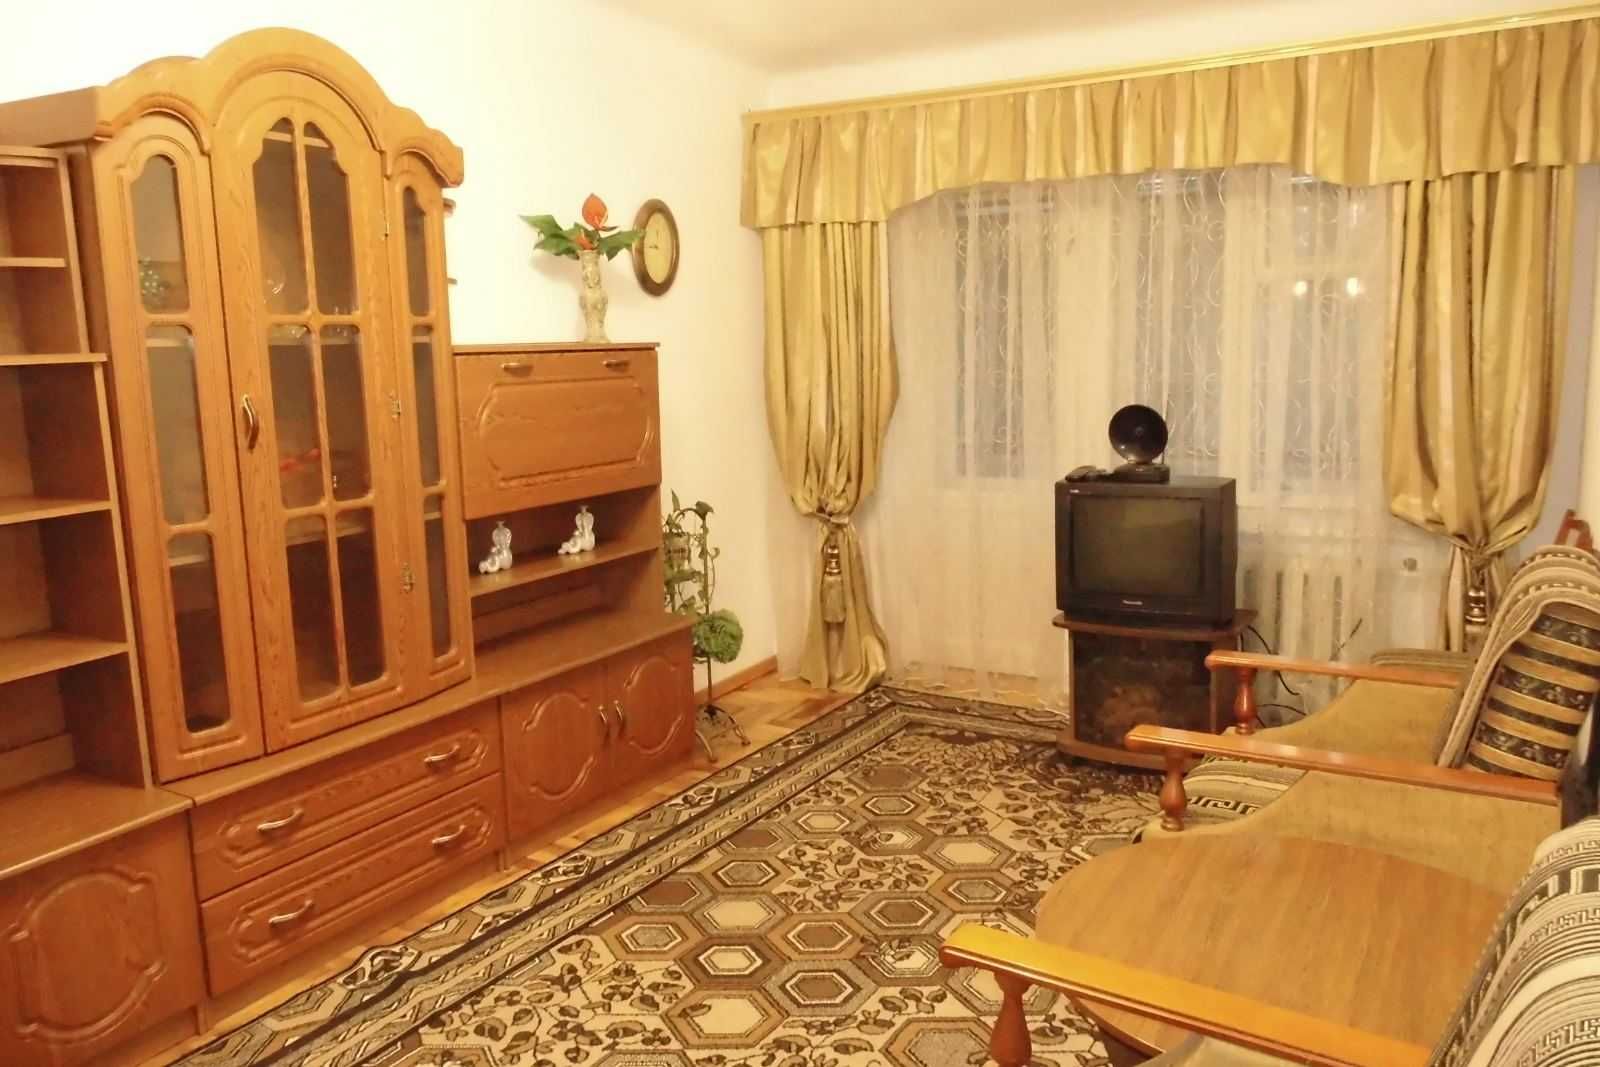 Сдается в долгосрочную аренду 2-х квартира в районе Иванова